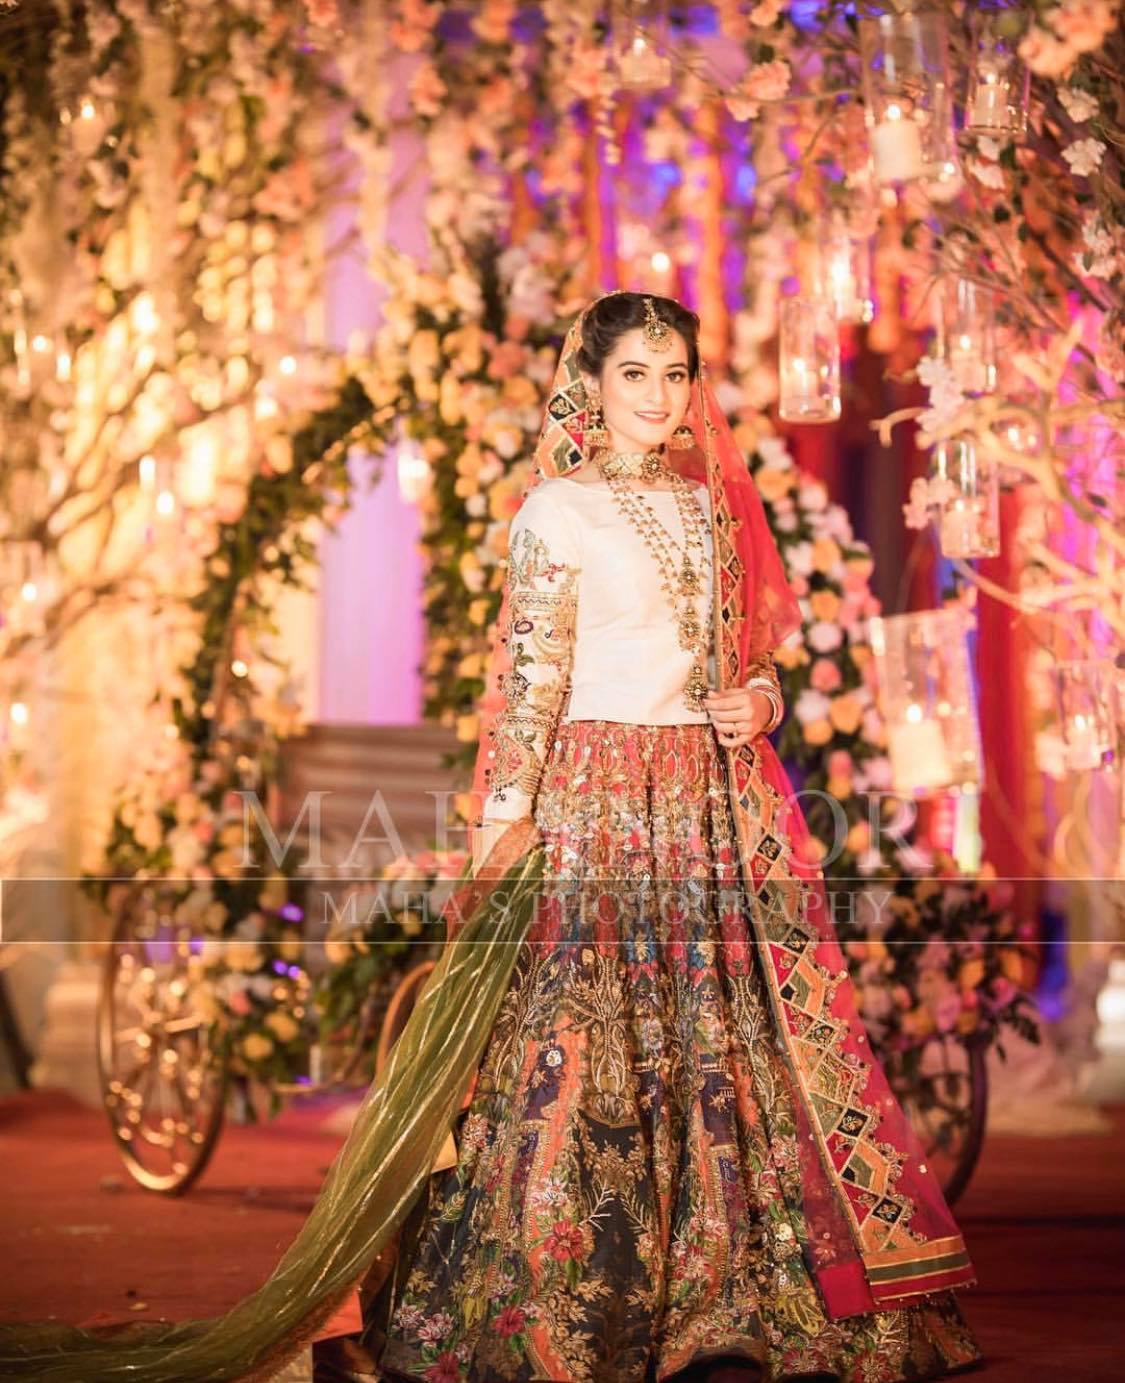 Beautiful Mehndi Dresses & Looks of Pakistani Celebrities